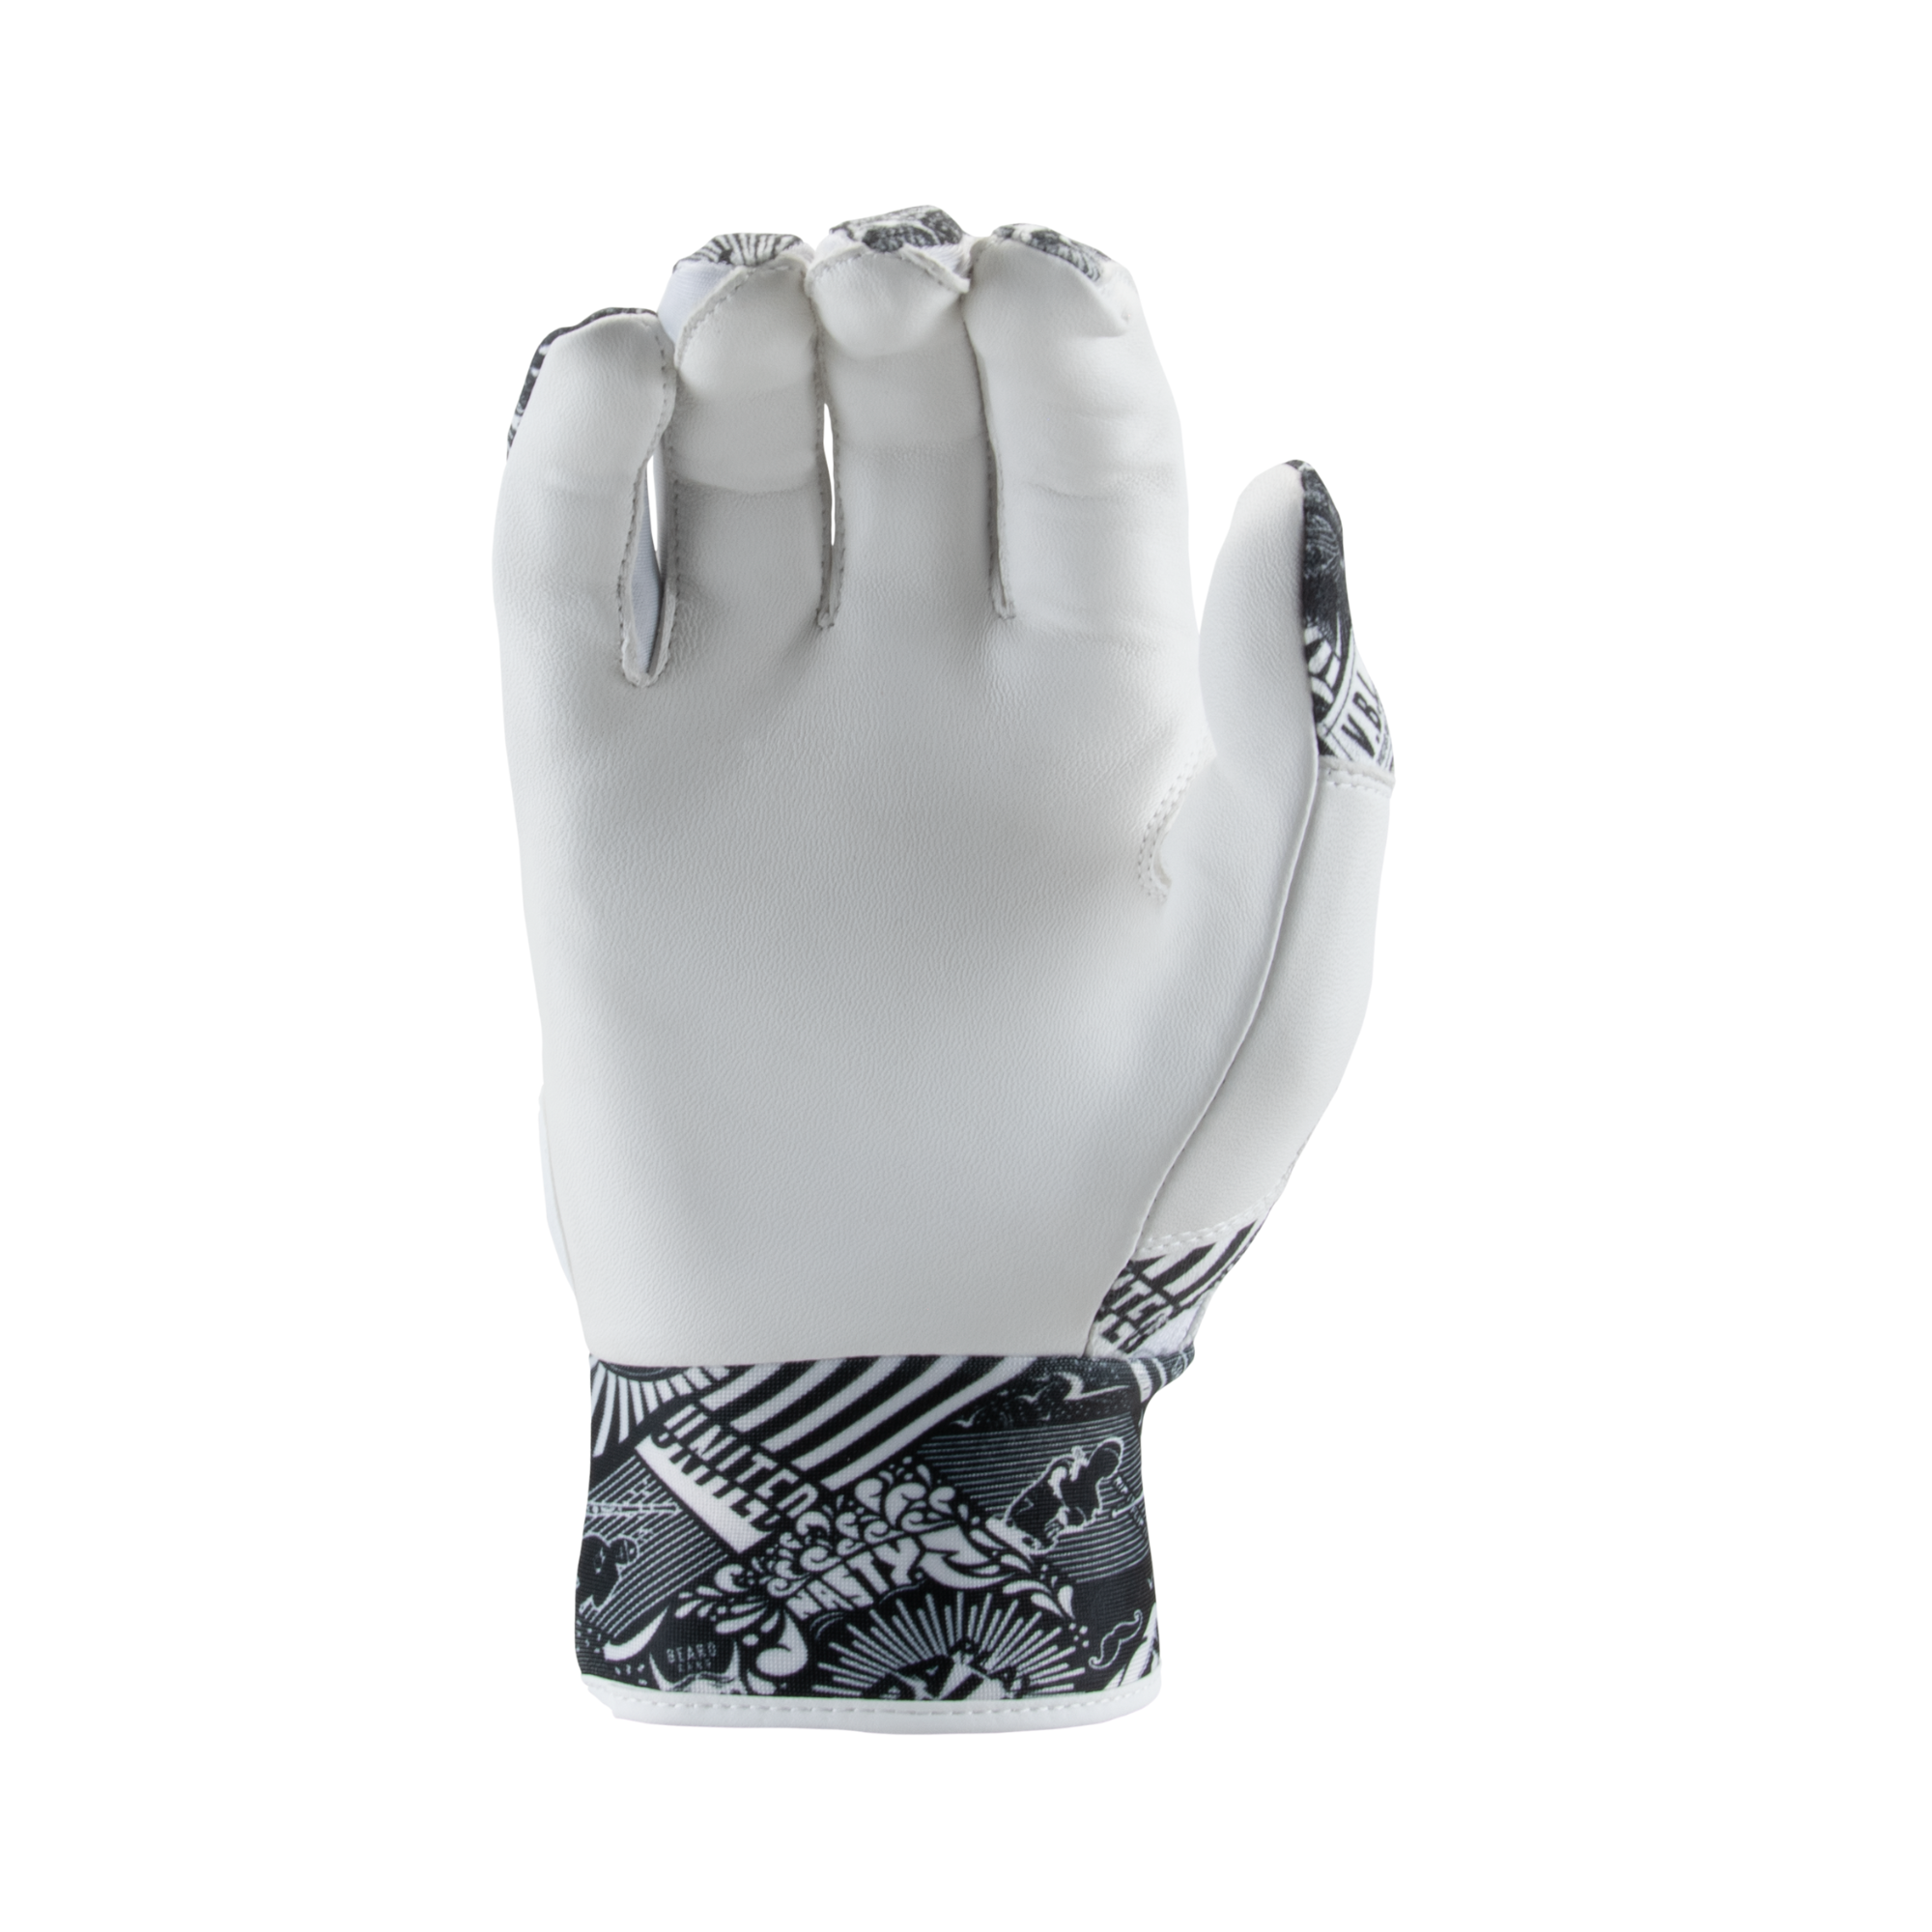 Victus Nox Batting Glove - White/Silver